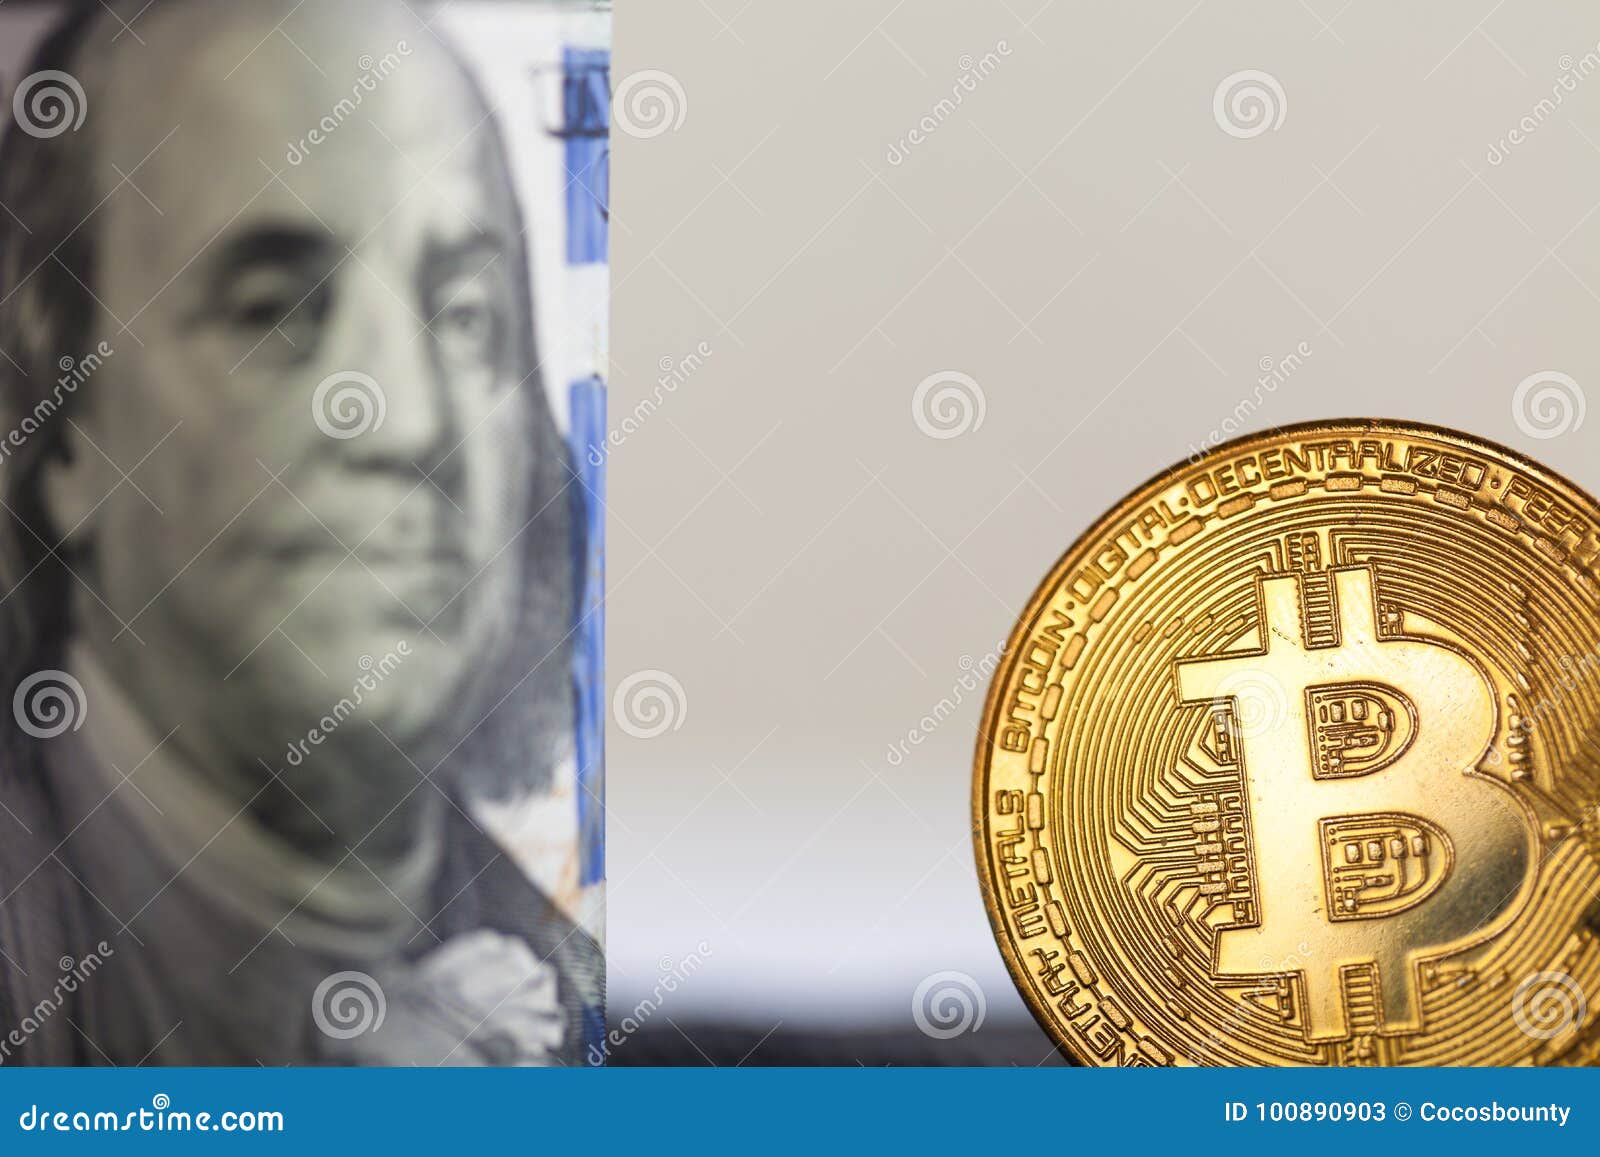 365 bitcoin to dollar